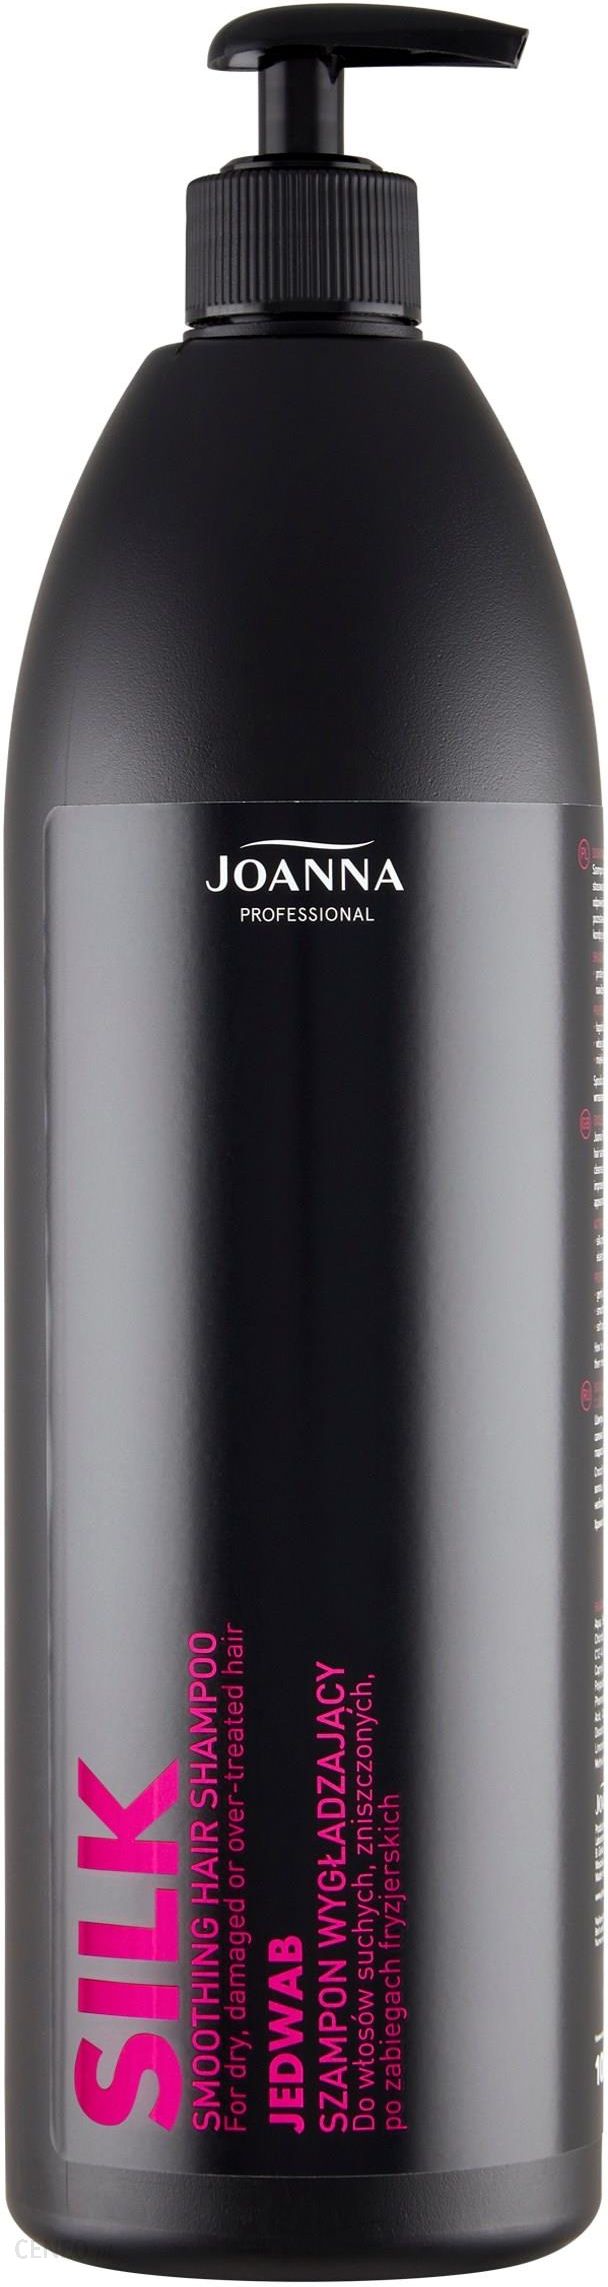 joanna szampon wygładzający z jedwabiem 1000ml